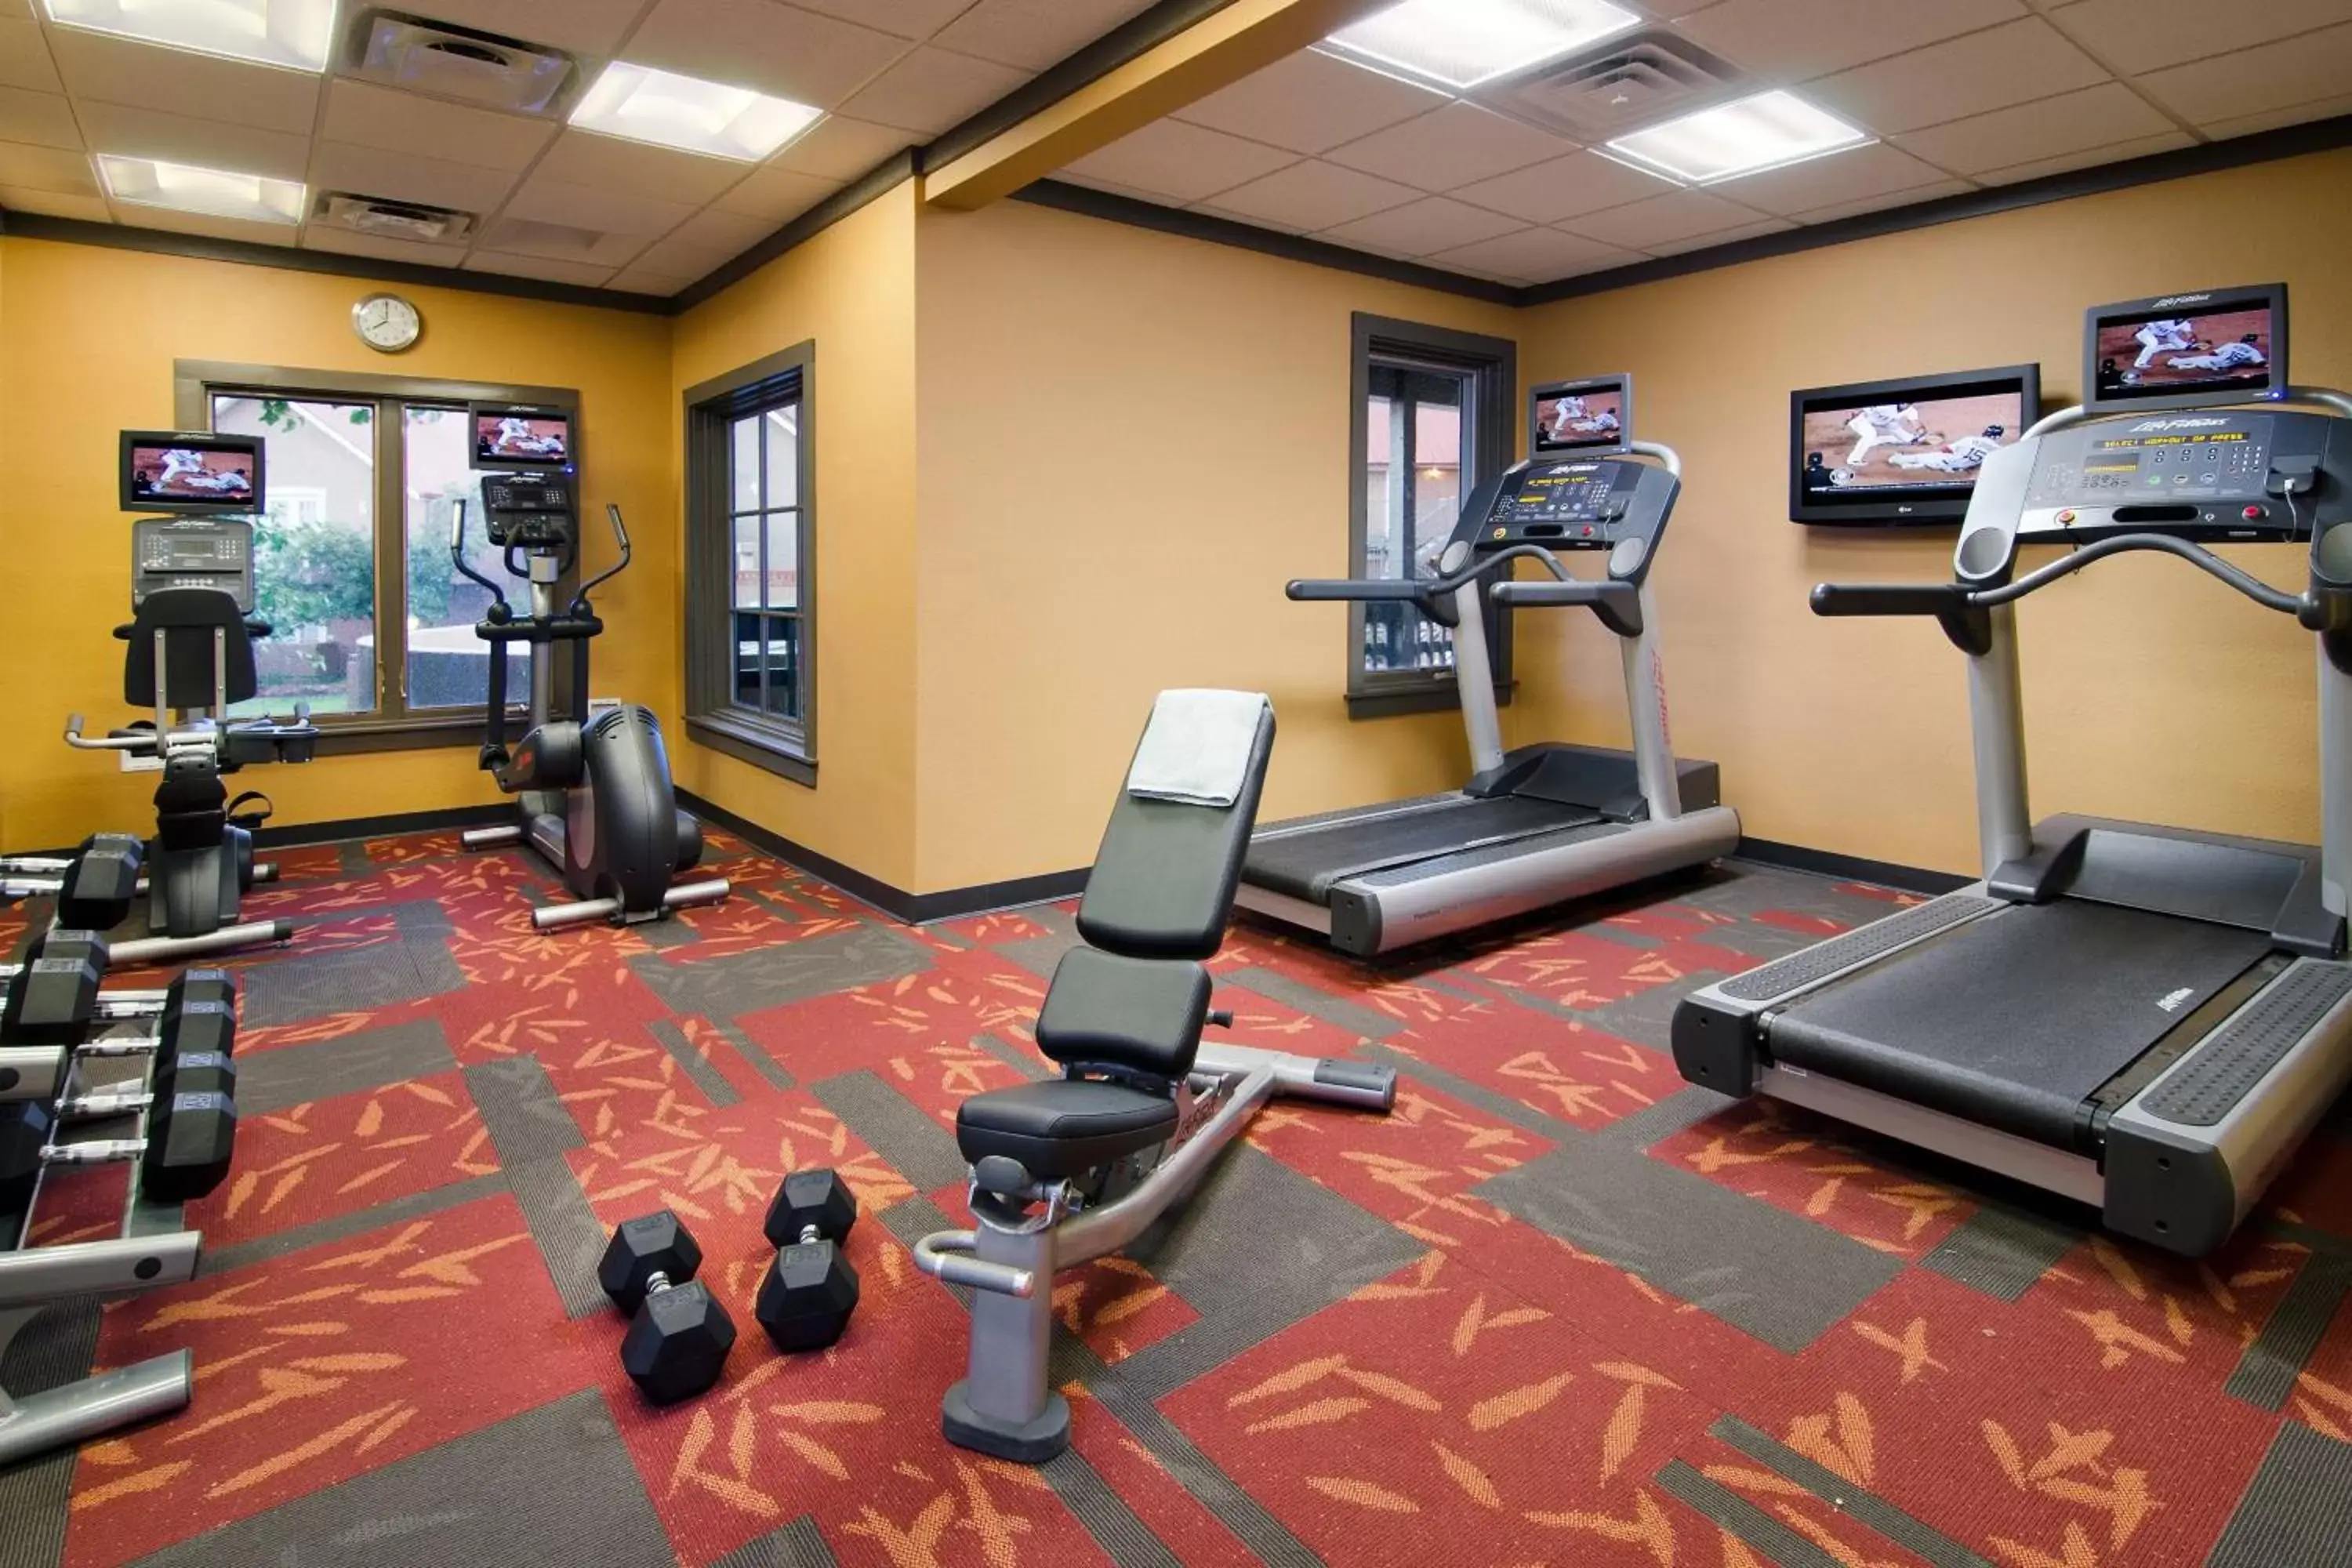 Fitness centre/facilities, Fitness Center/Facilities in Residence Inn Santa Fe